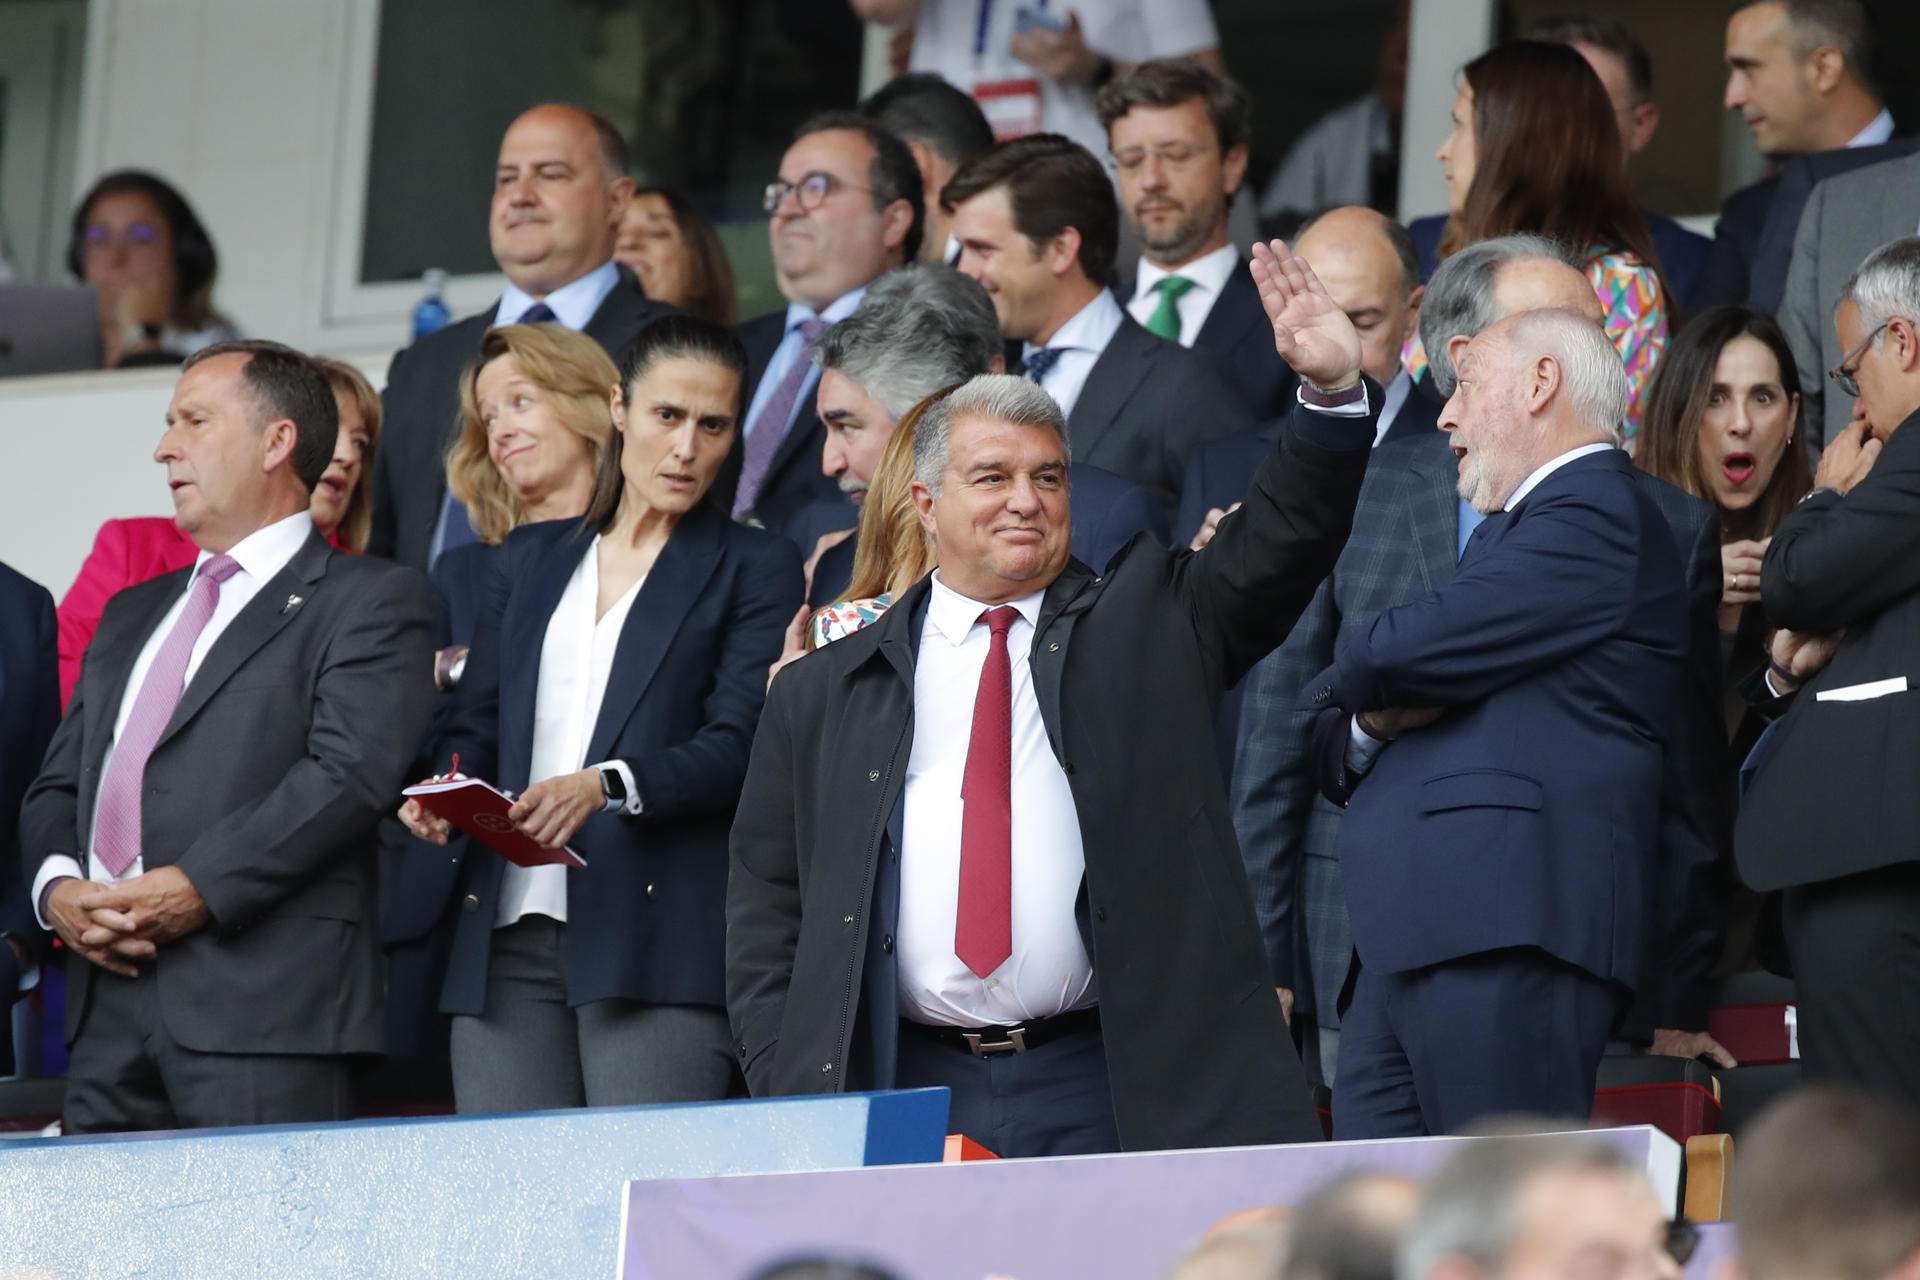 Joan Laporta i l'acomiadament de Xavi: "En el club, el president pren totes les decisions i cal acceptar-les"